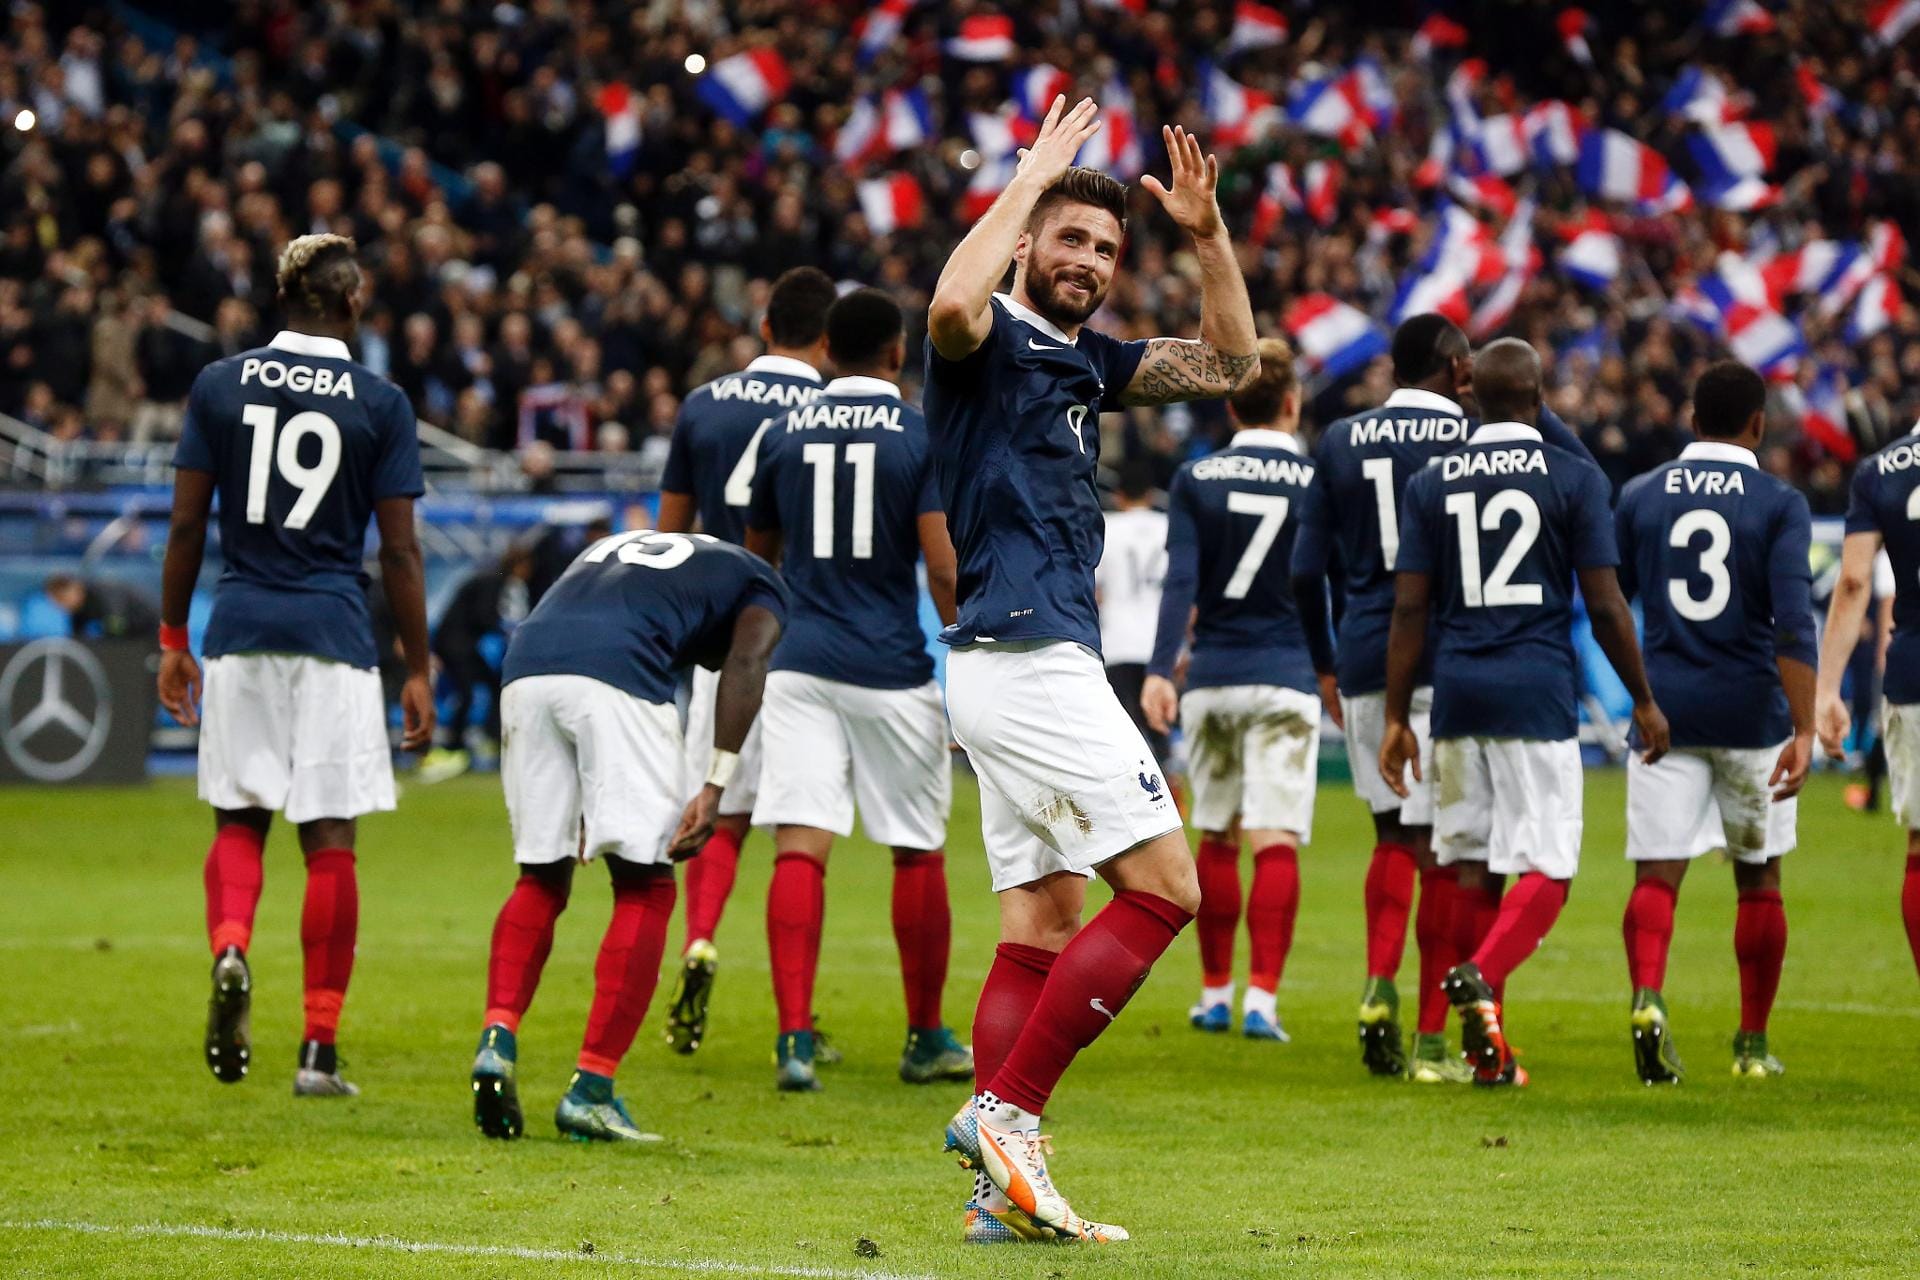 Der Stürmer von Arsenal London darf sich kurz vor der Pause für seinen Treffer zur französischen Führung feiern lassen.